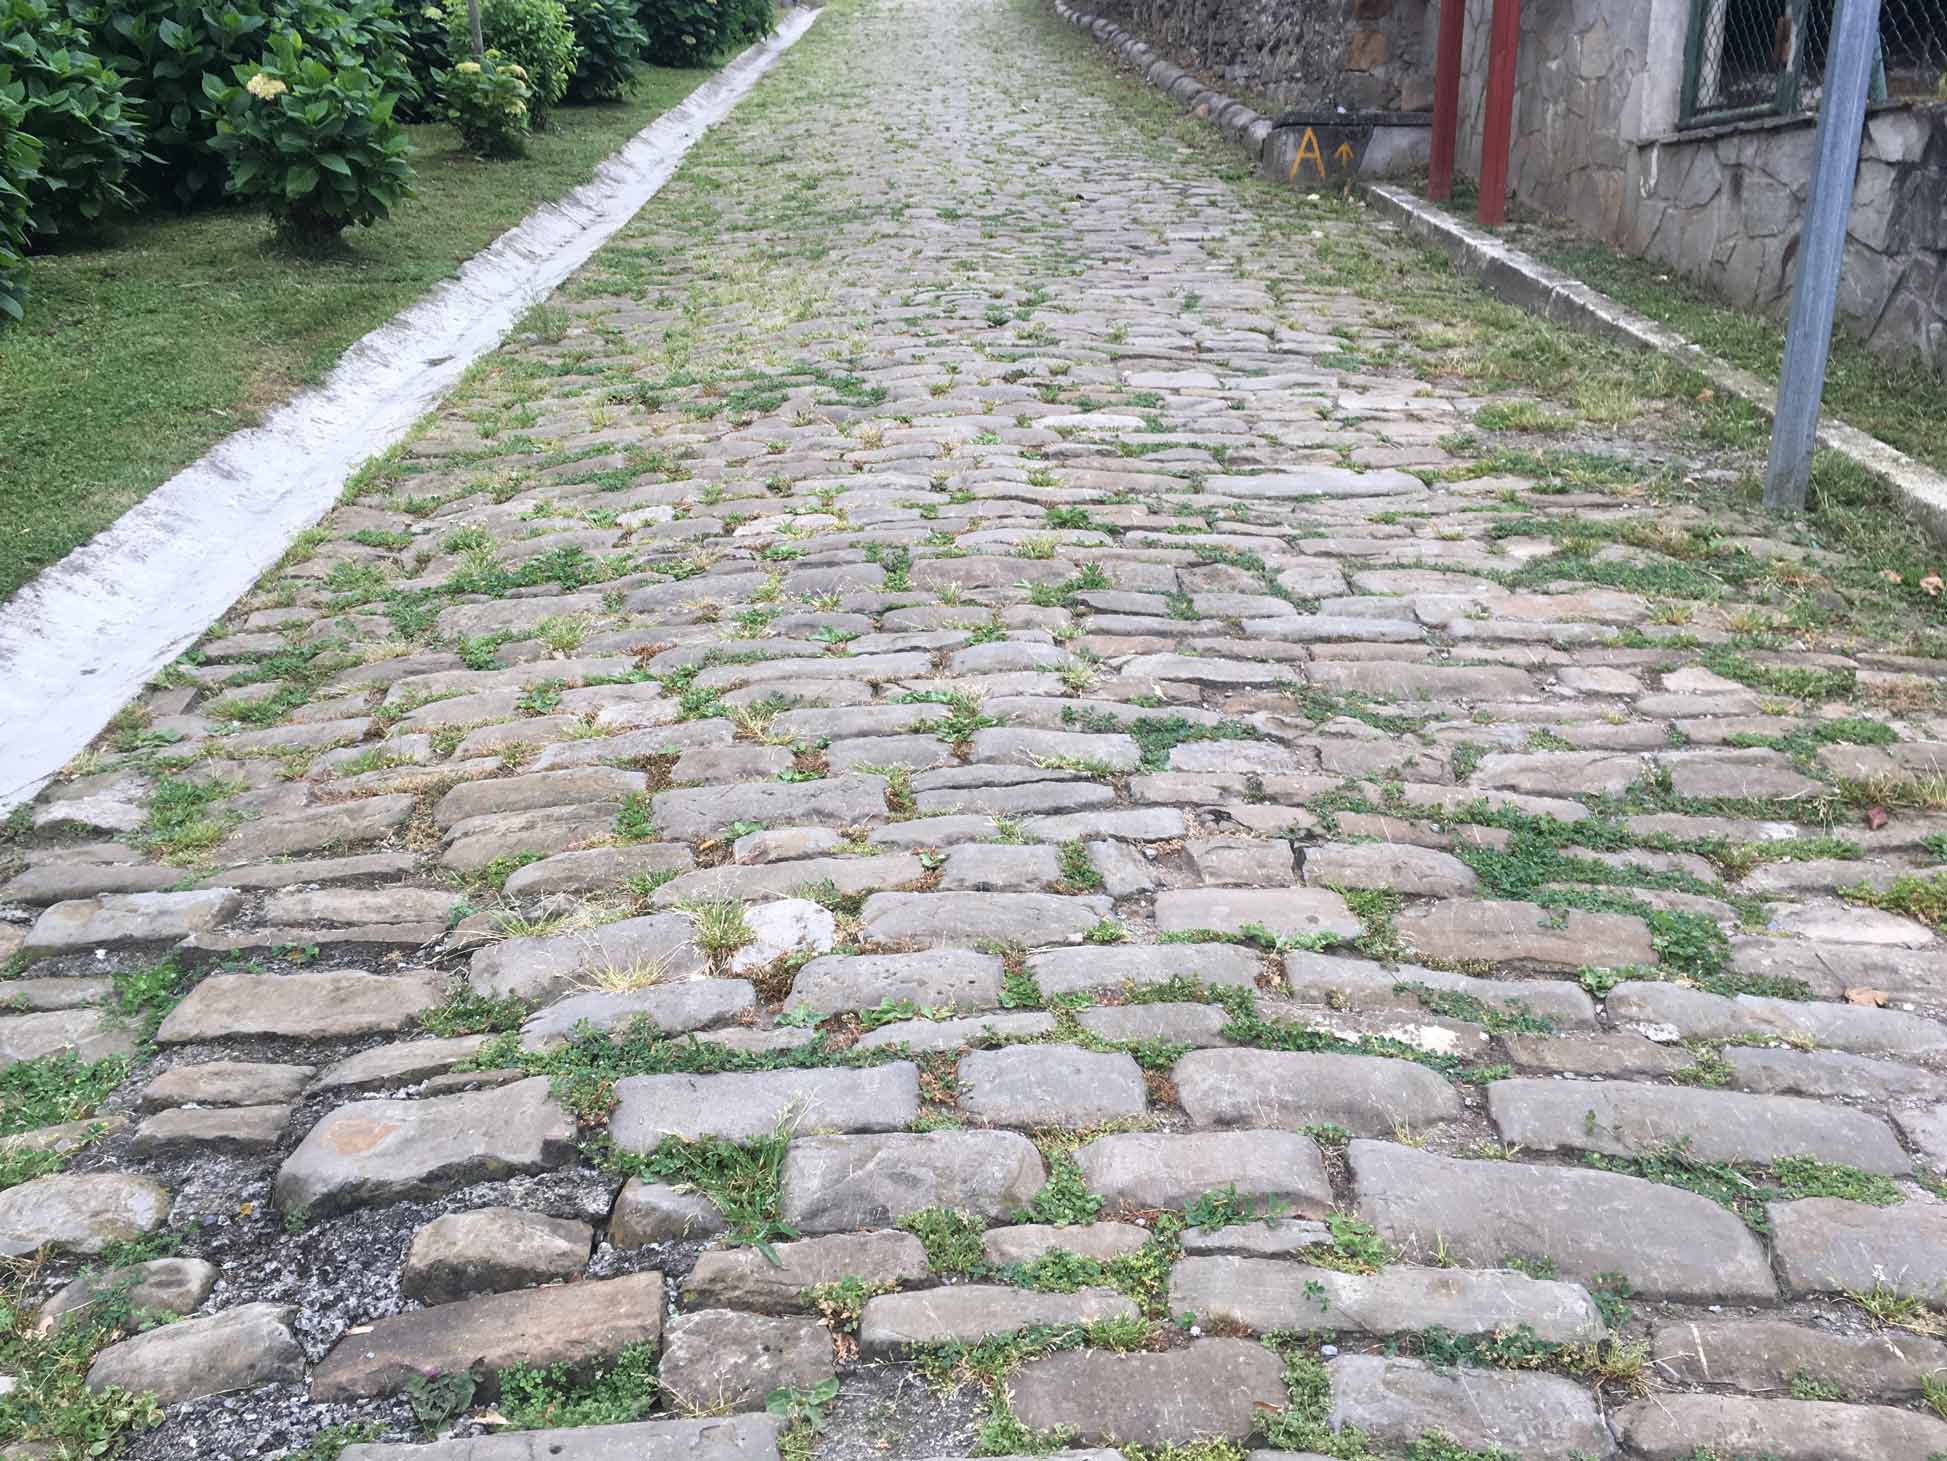 Roman Road